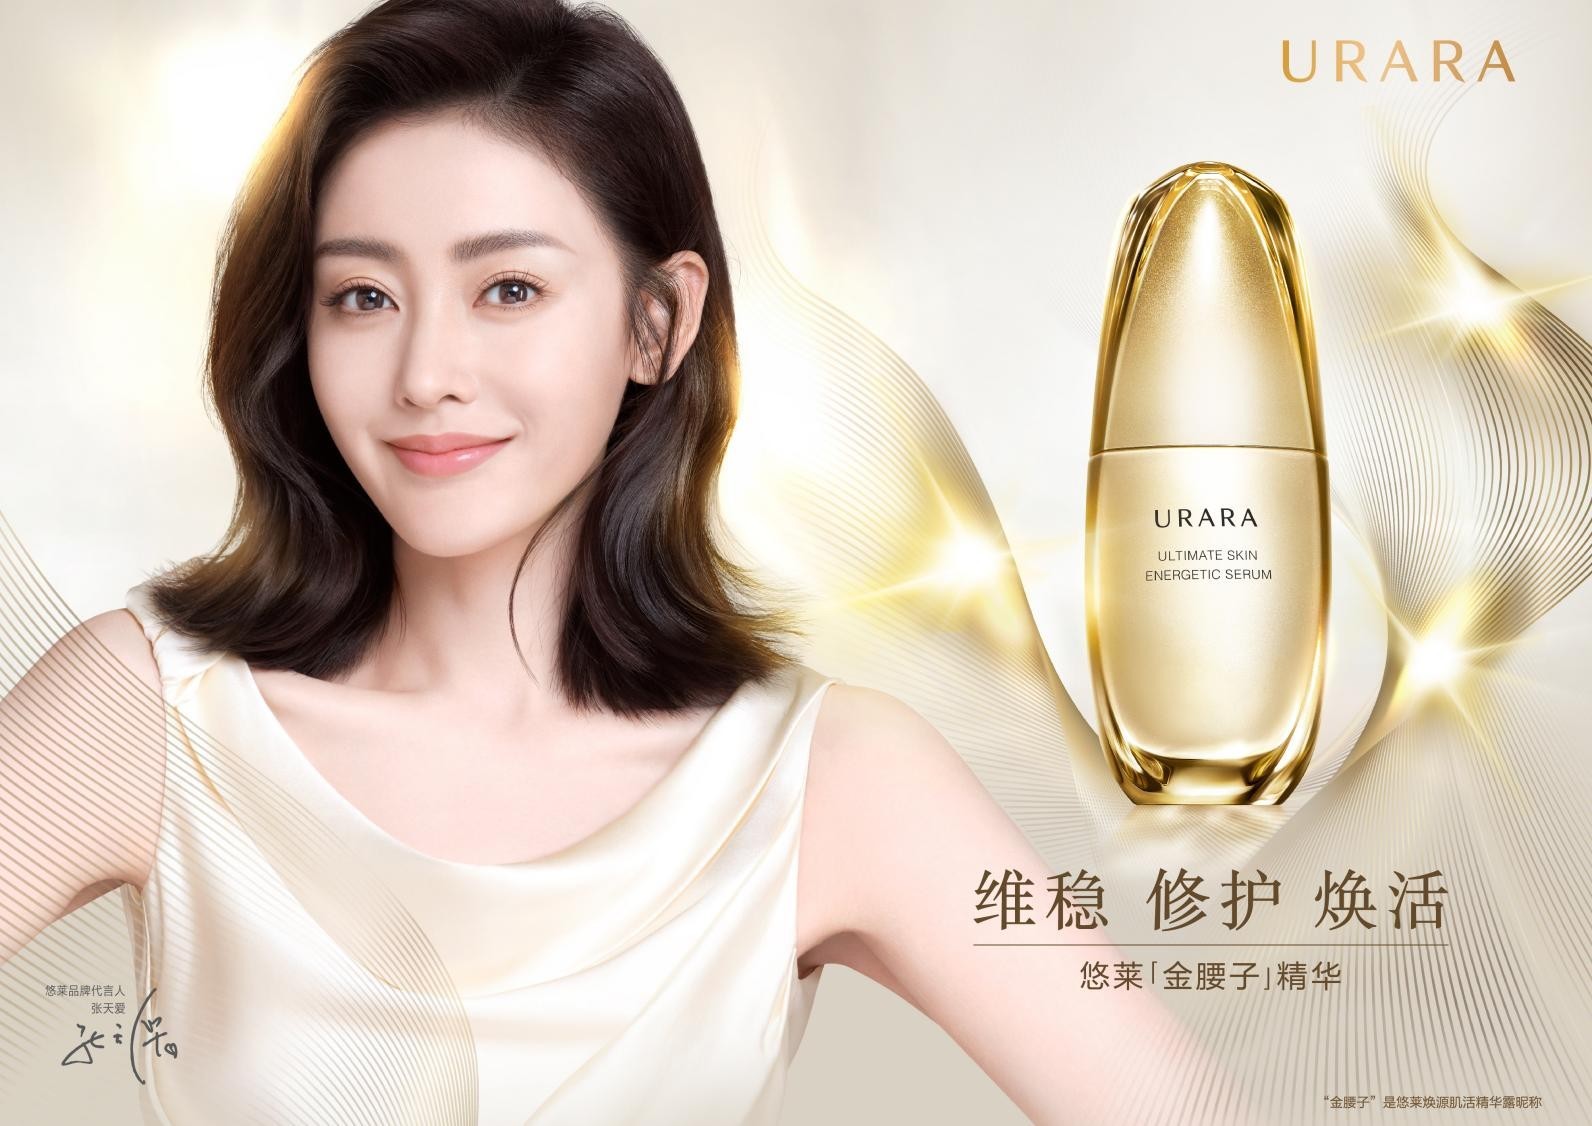 作为最早一批进入中国化妆品领域的外资品牌,更是中国无数女